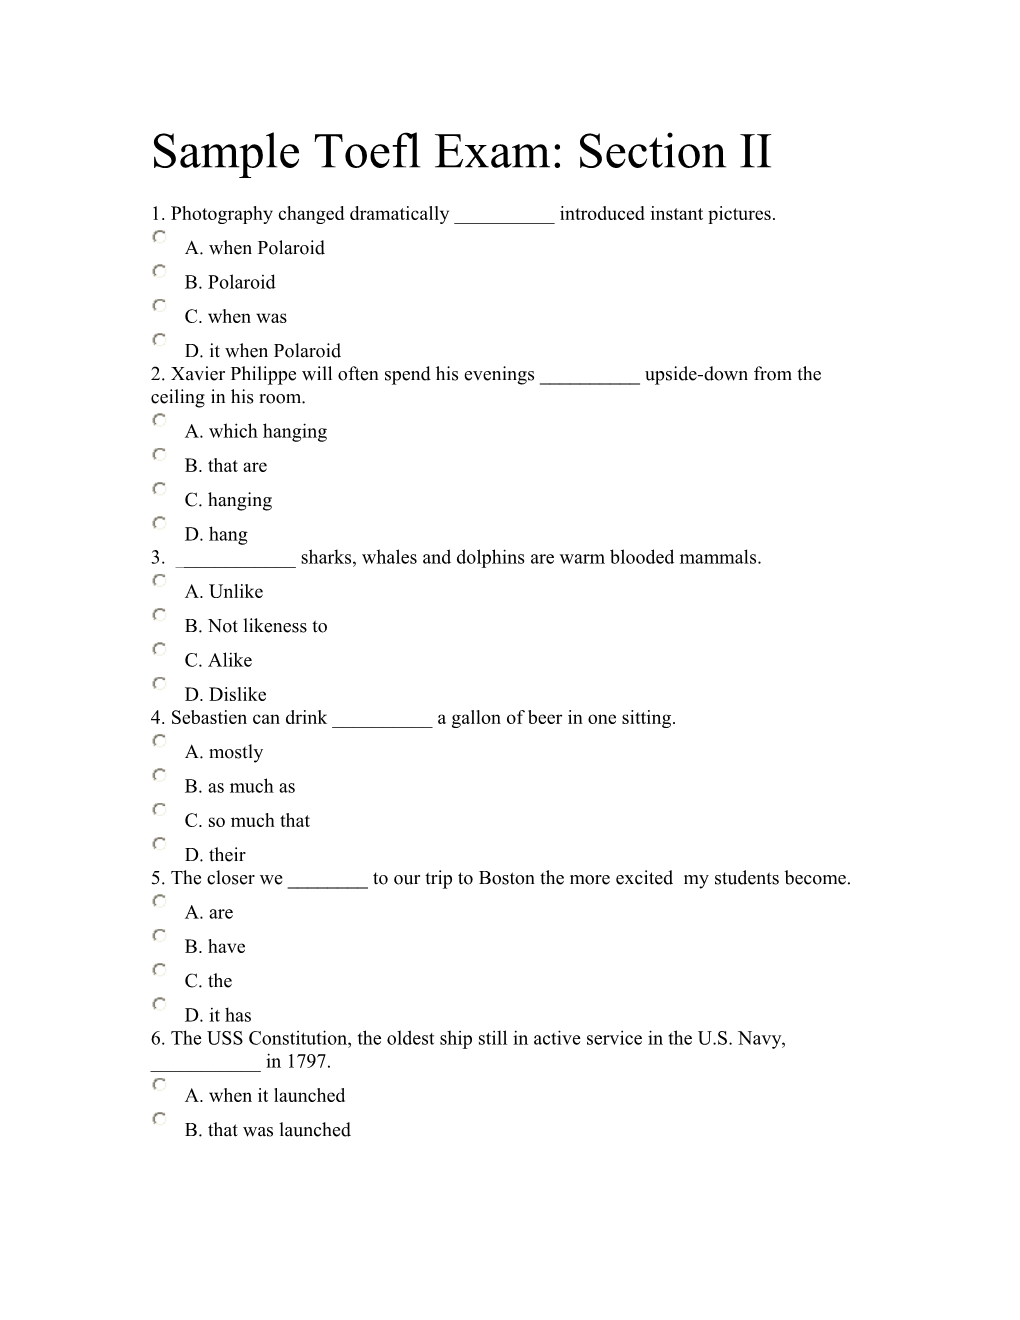 Sample Toefl Exam: Section II